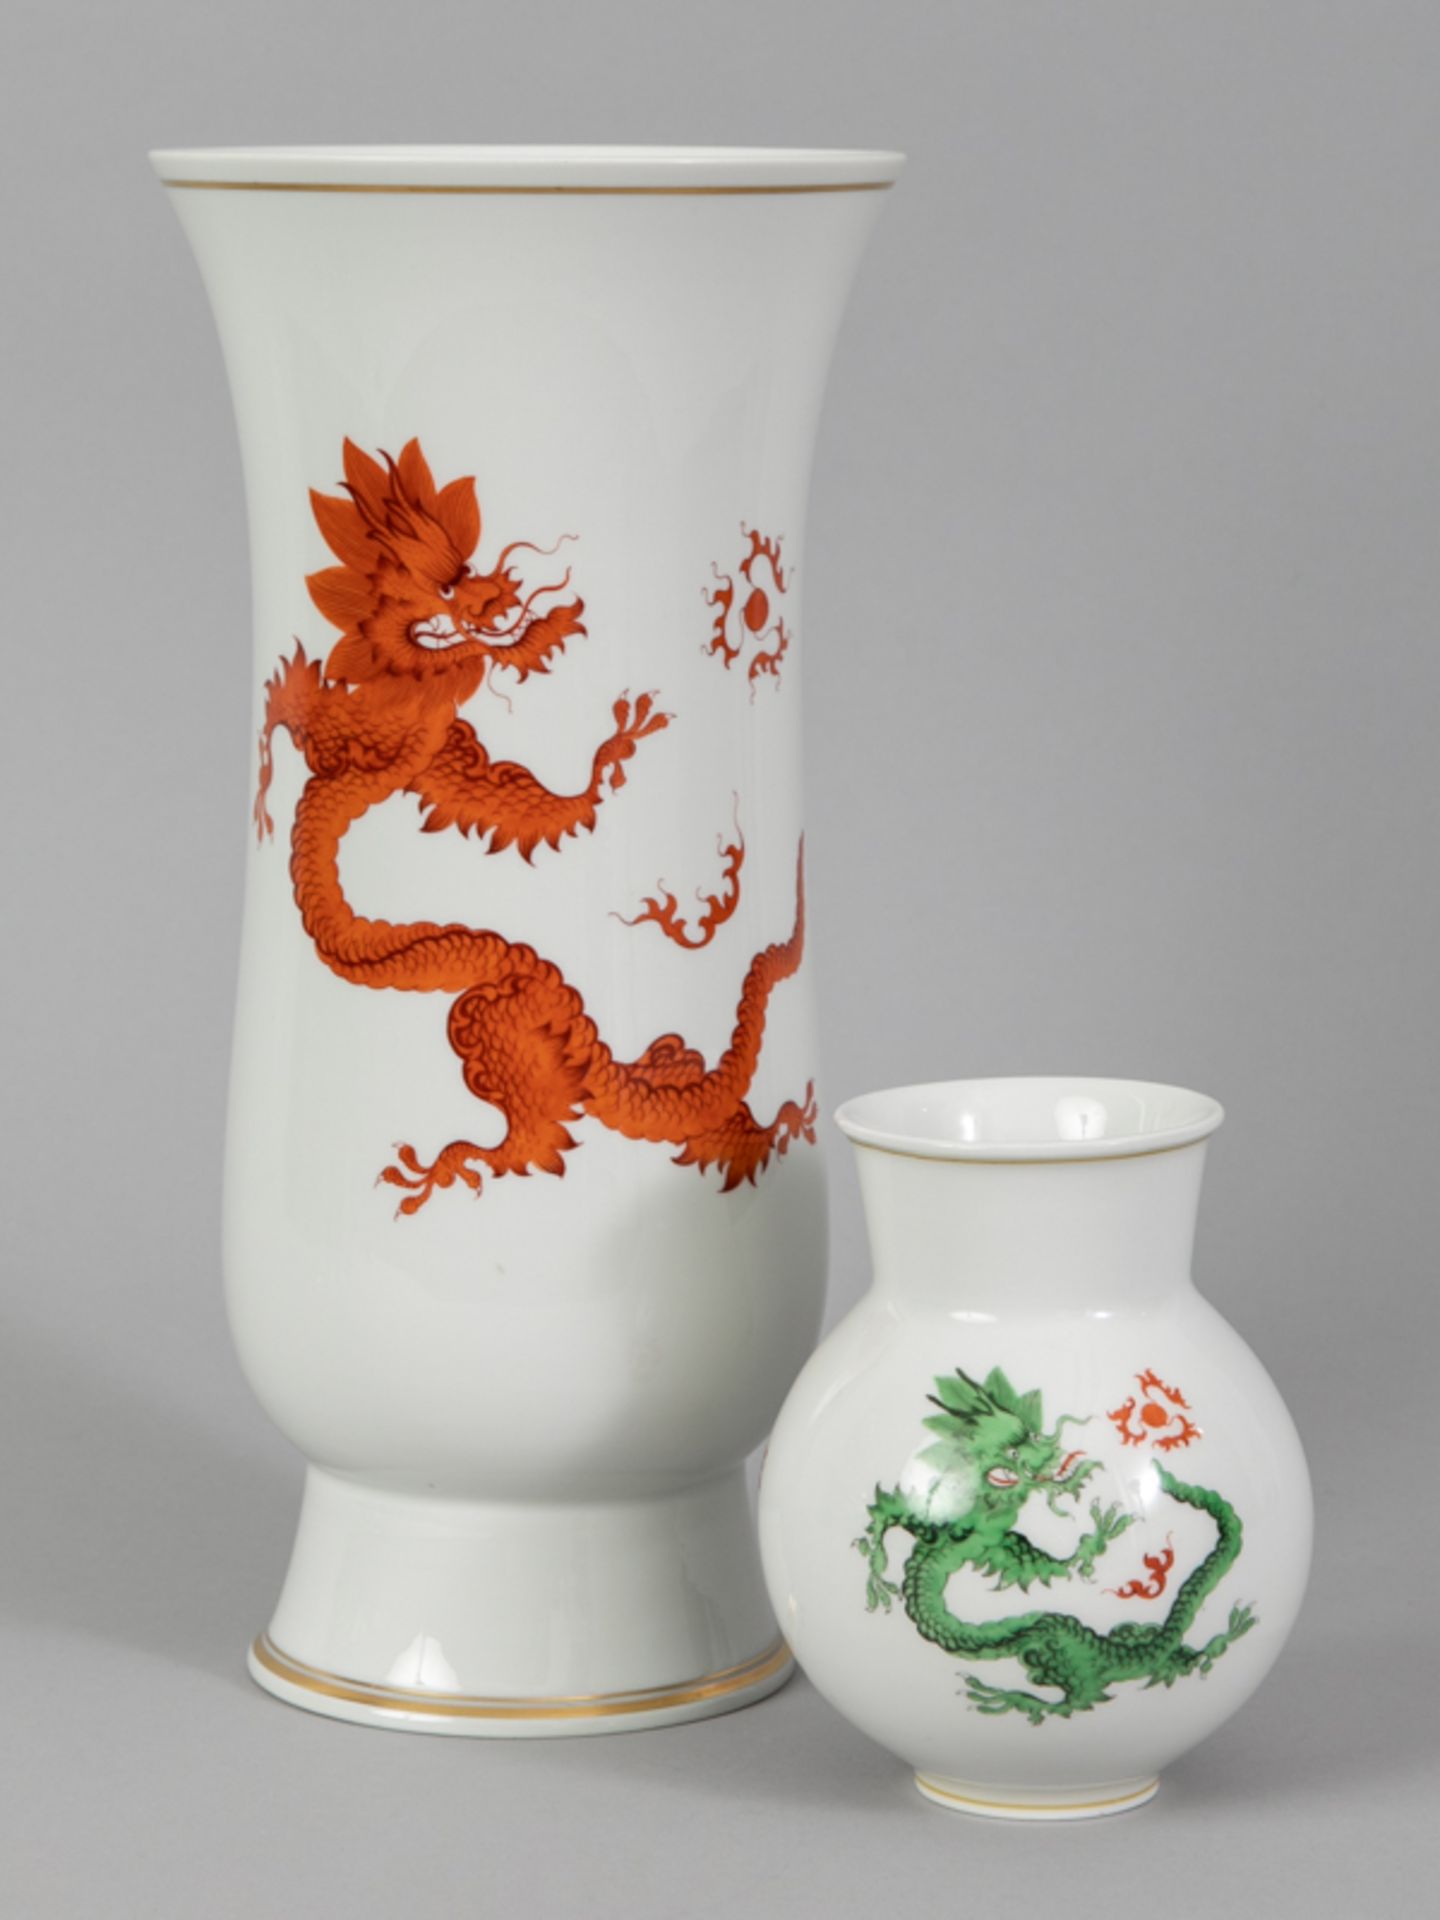 2 Vasen Dekor "Mingdrache", Meissen, 20. Jahrhundert.